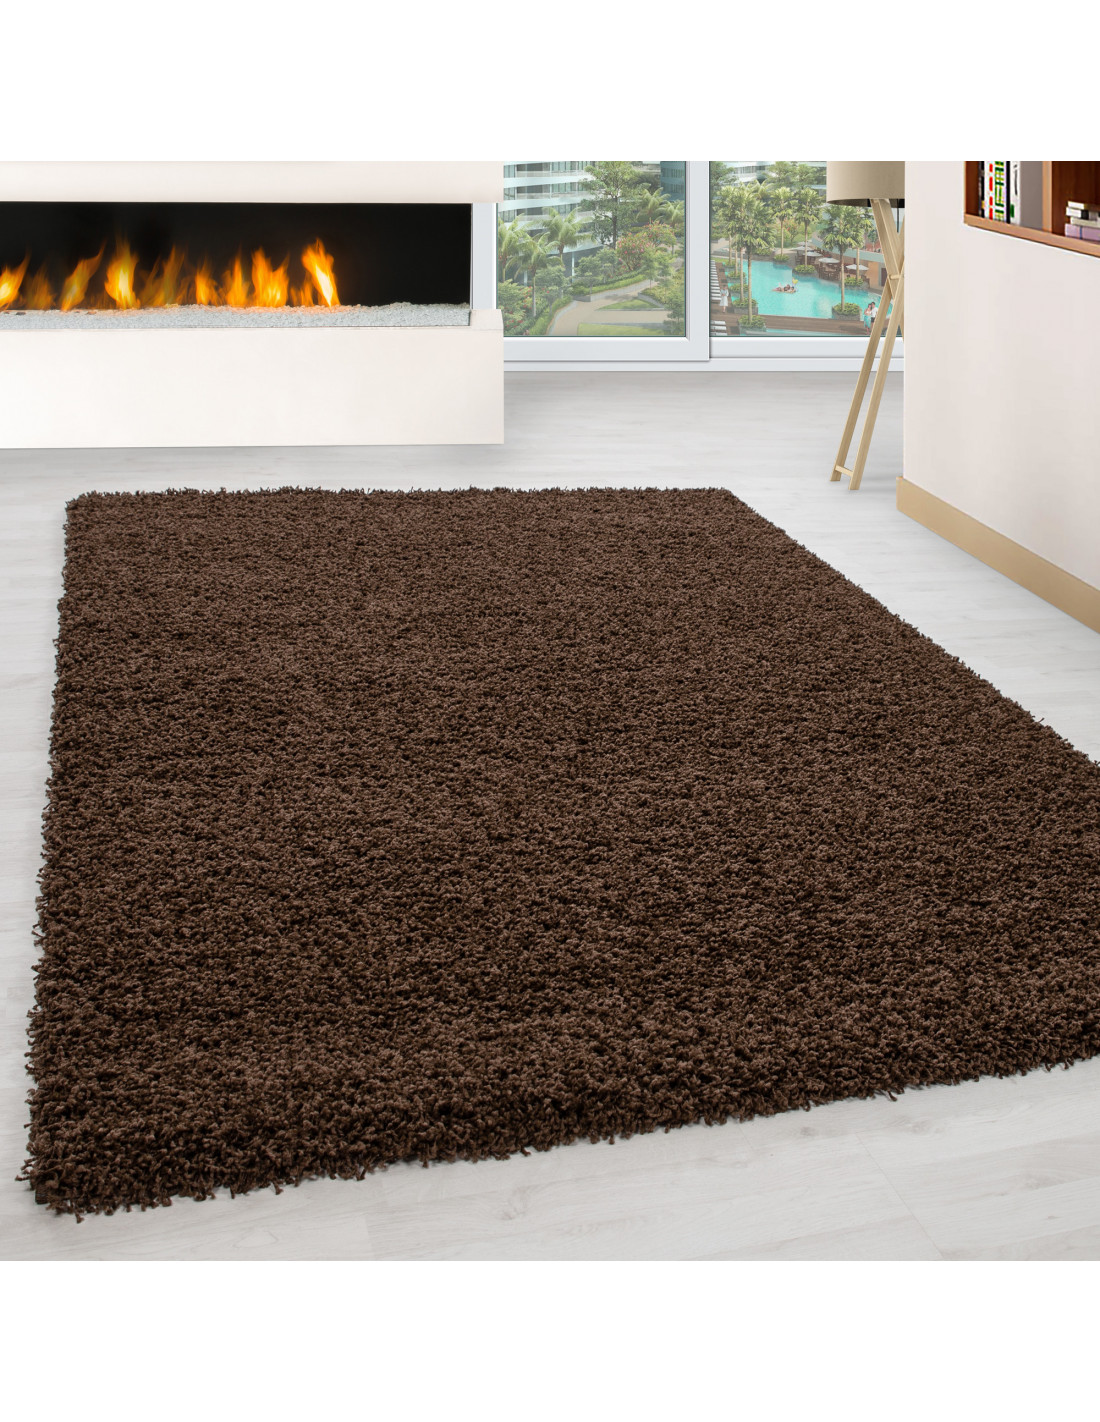 Shaggy carpet, pile height 3cm, uni-color brown